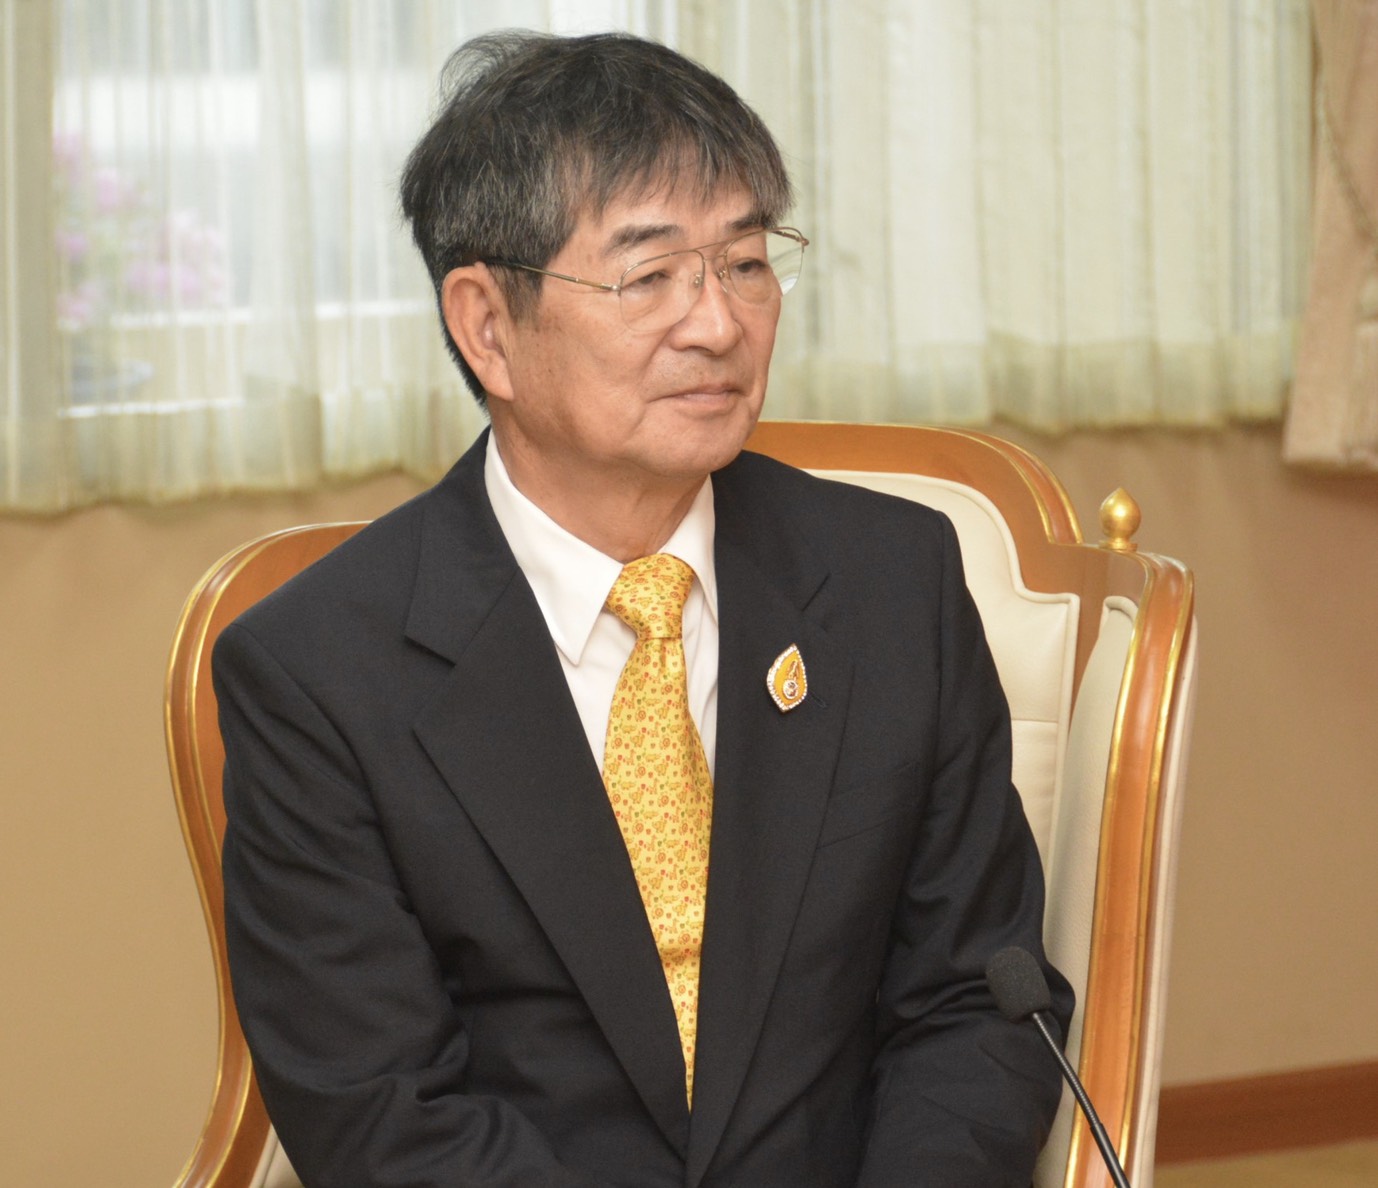 นายเคียวอิ ยานากิซาวา ประธานองค์กรพัฒนาฝีมือแรงงานระดับนานาชาติ ประเทศญี่ปุ่น